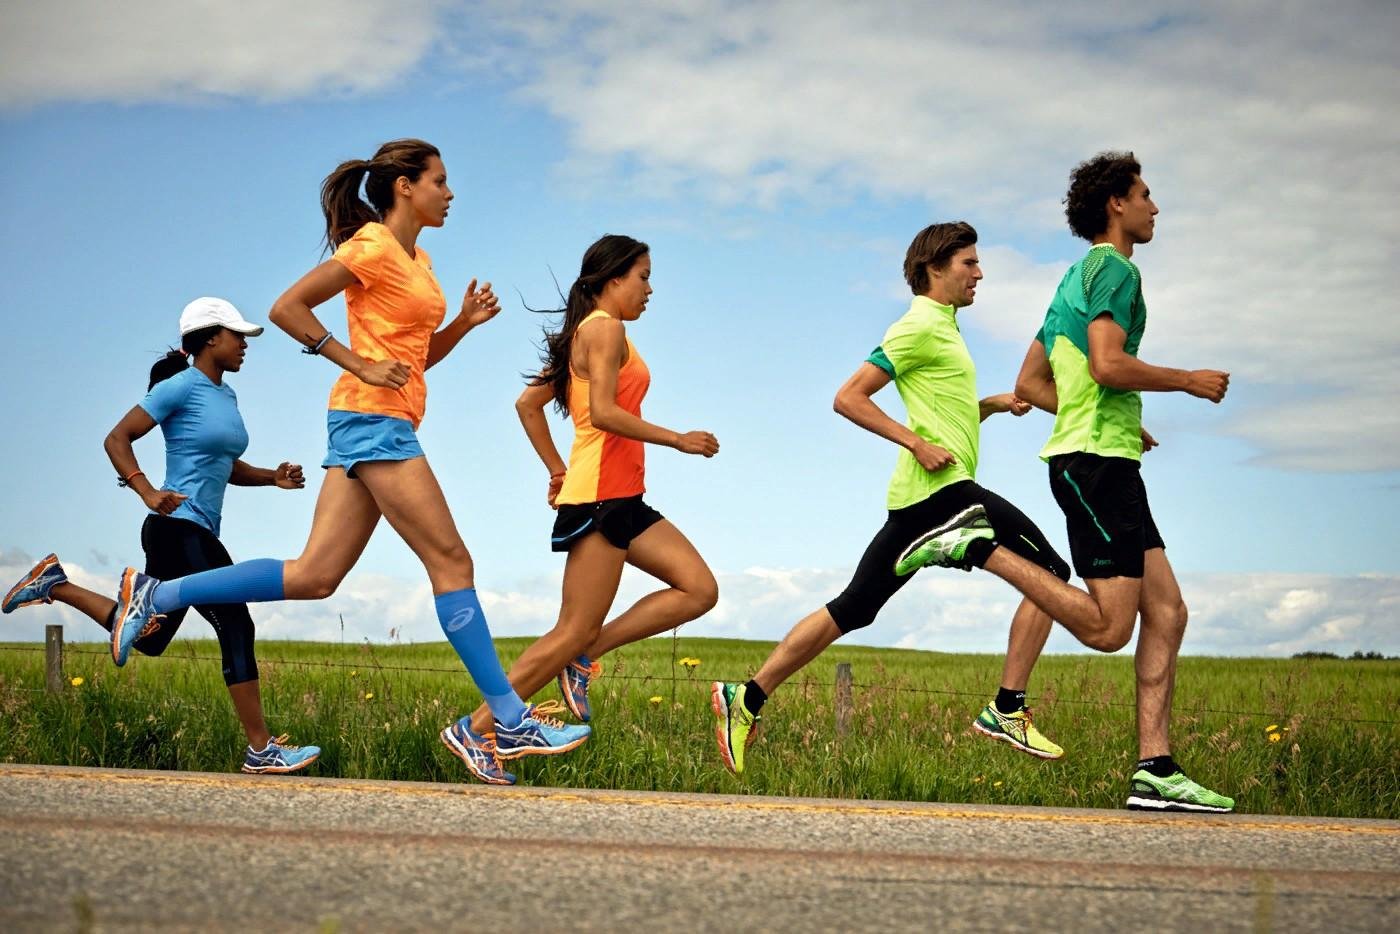 Ходьба врассыпную. Спорт бег. Спортивные люди. Бегущий человек. Занятие физкультурой и спортом.